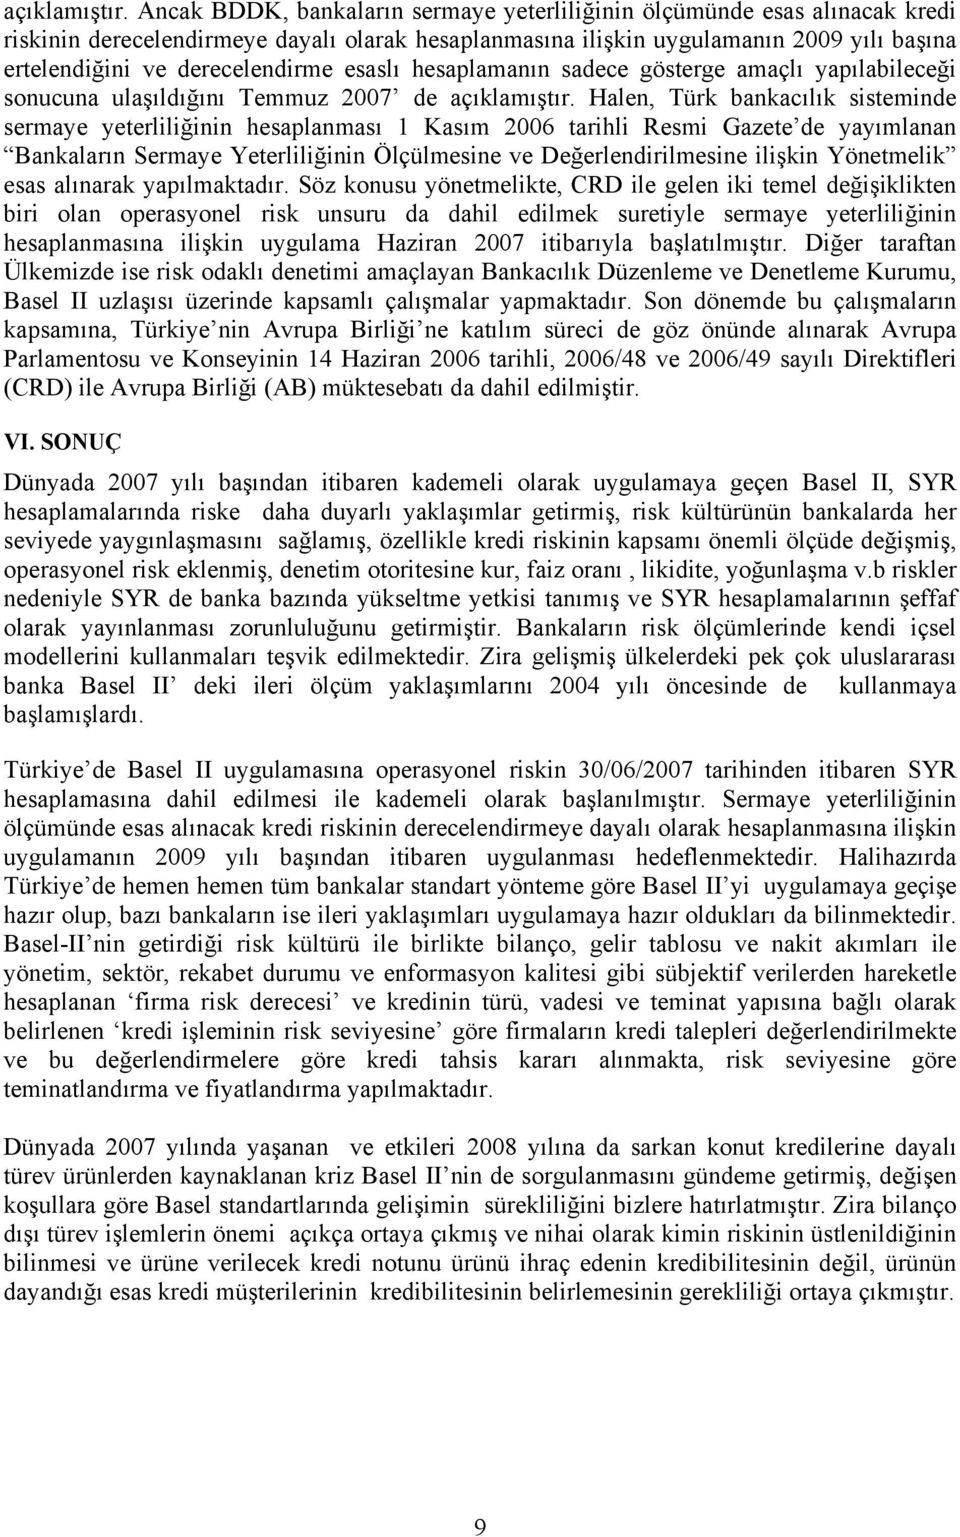 esaslı hesaplamanın sadece gösterge amaçlı yapılabileceği sonucuna ulaşıldığını Temmuz 2007 de  Halen, Türk bankacılık sisteminde sermaye yeterliliğinin hesaplanması 1 Kasım 2006 tarihli Resmi Gazete